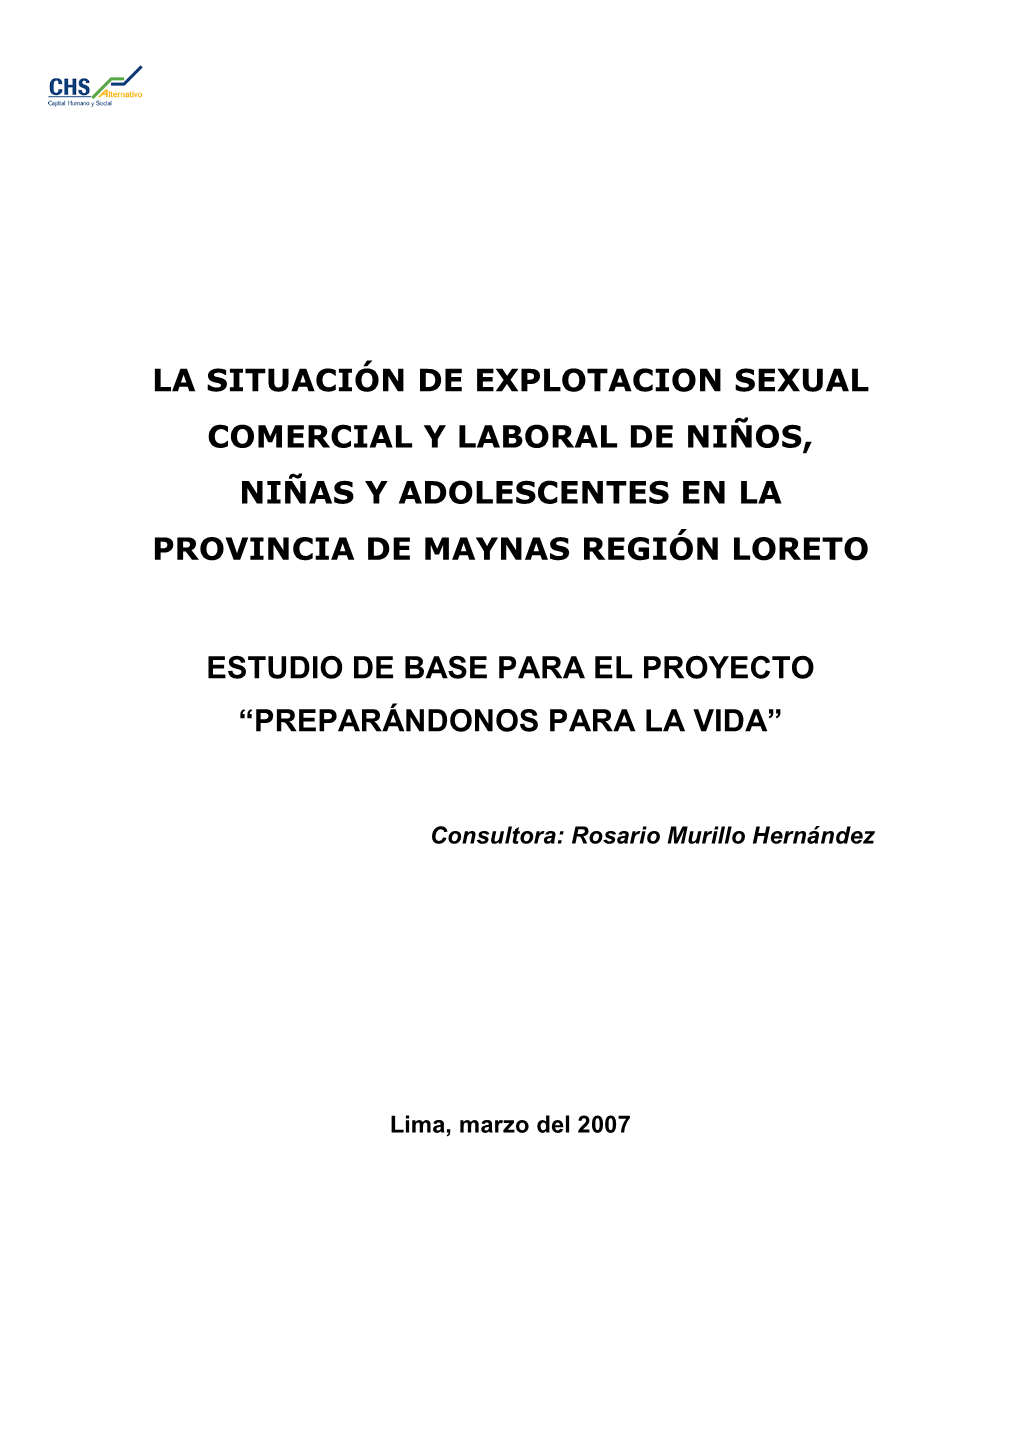 La Situación De Explotacion Sexual Comercial Y Laboral De Niños, Niñas Y Adolescentes En La Provincia De Maynas Región Loreto